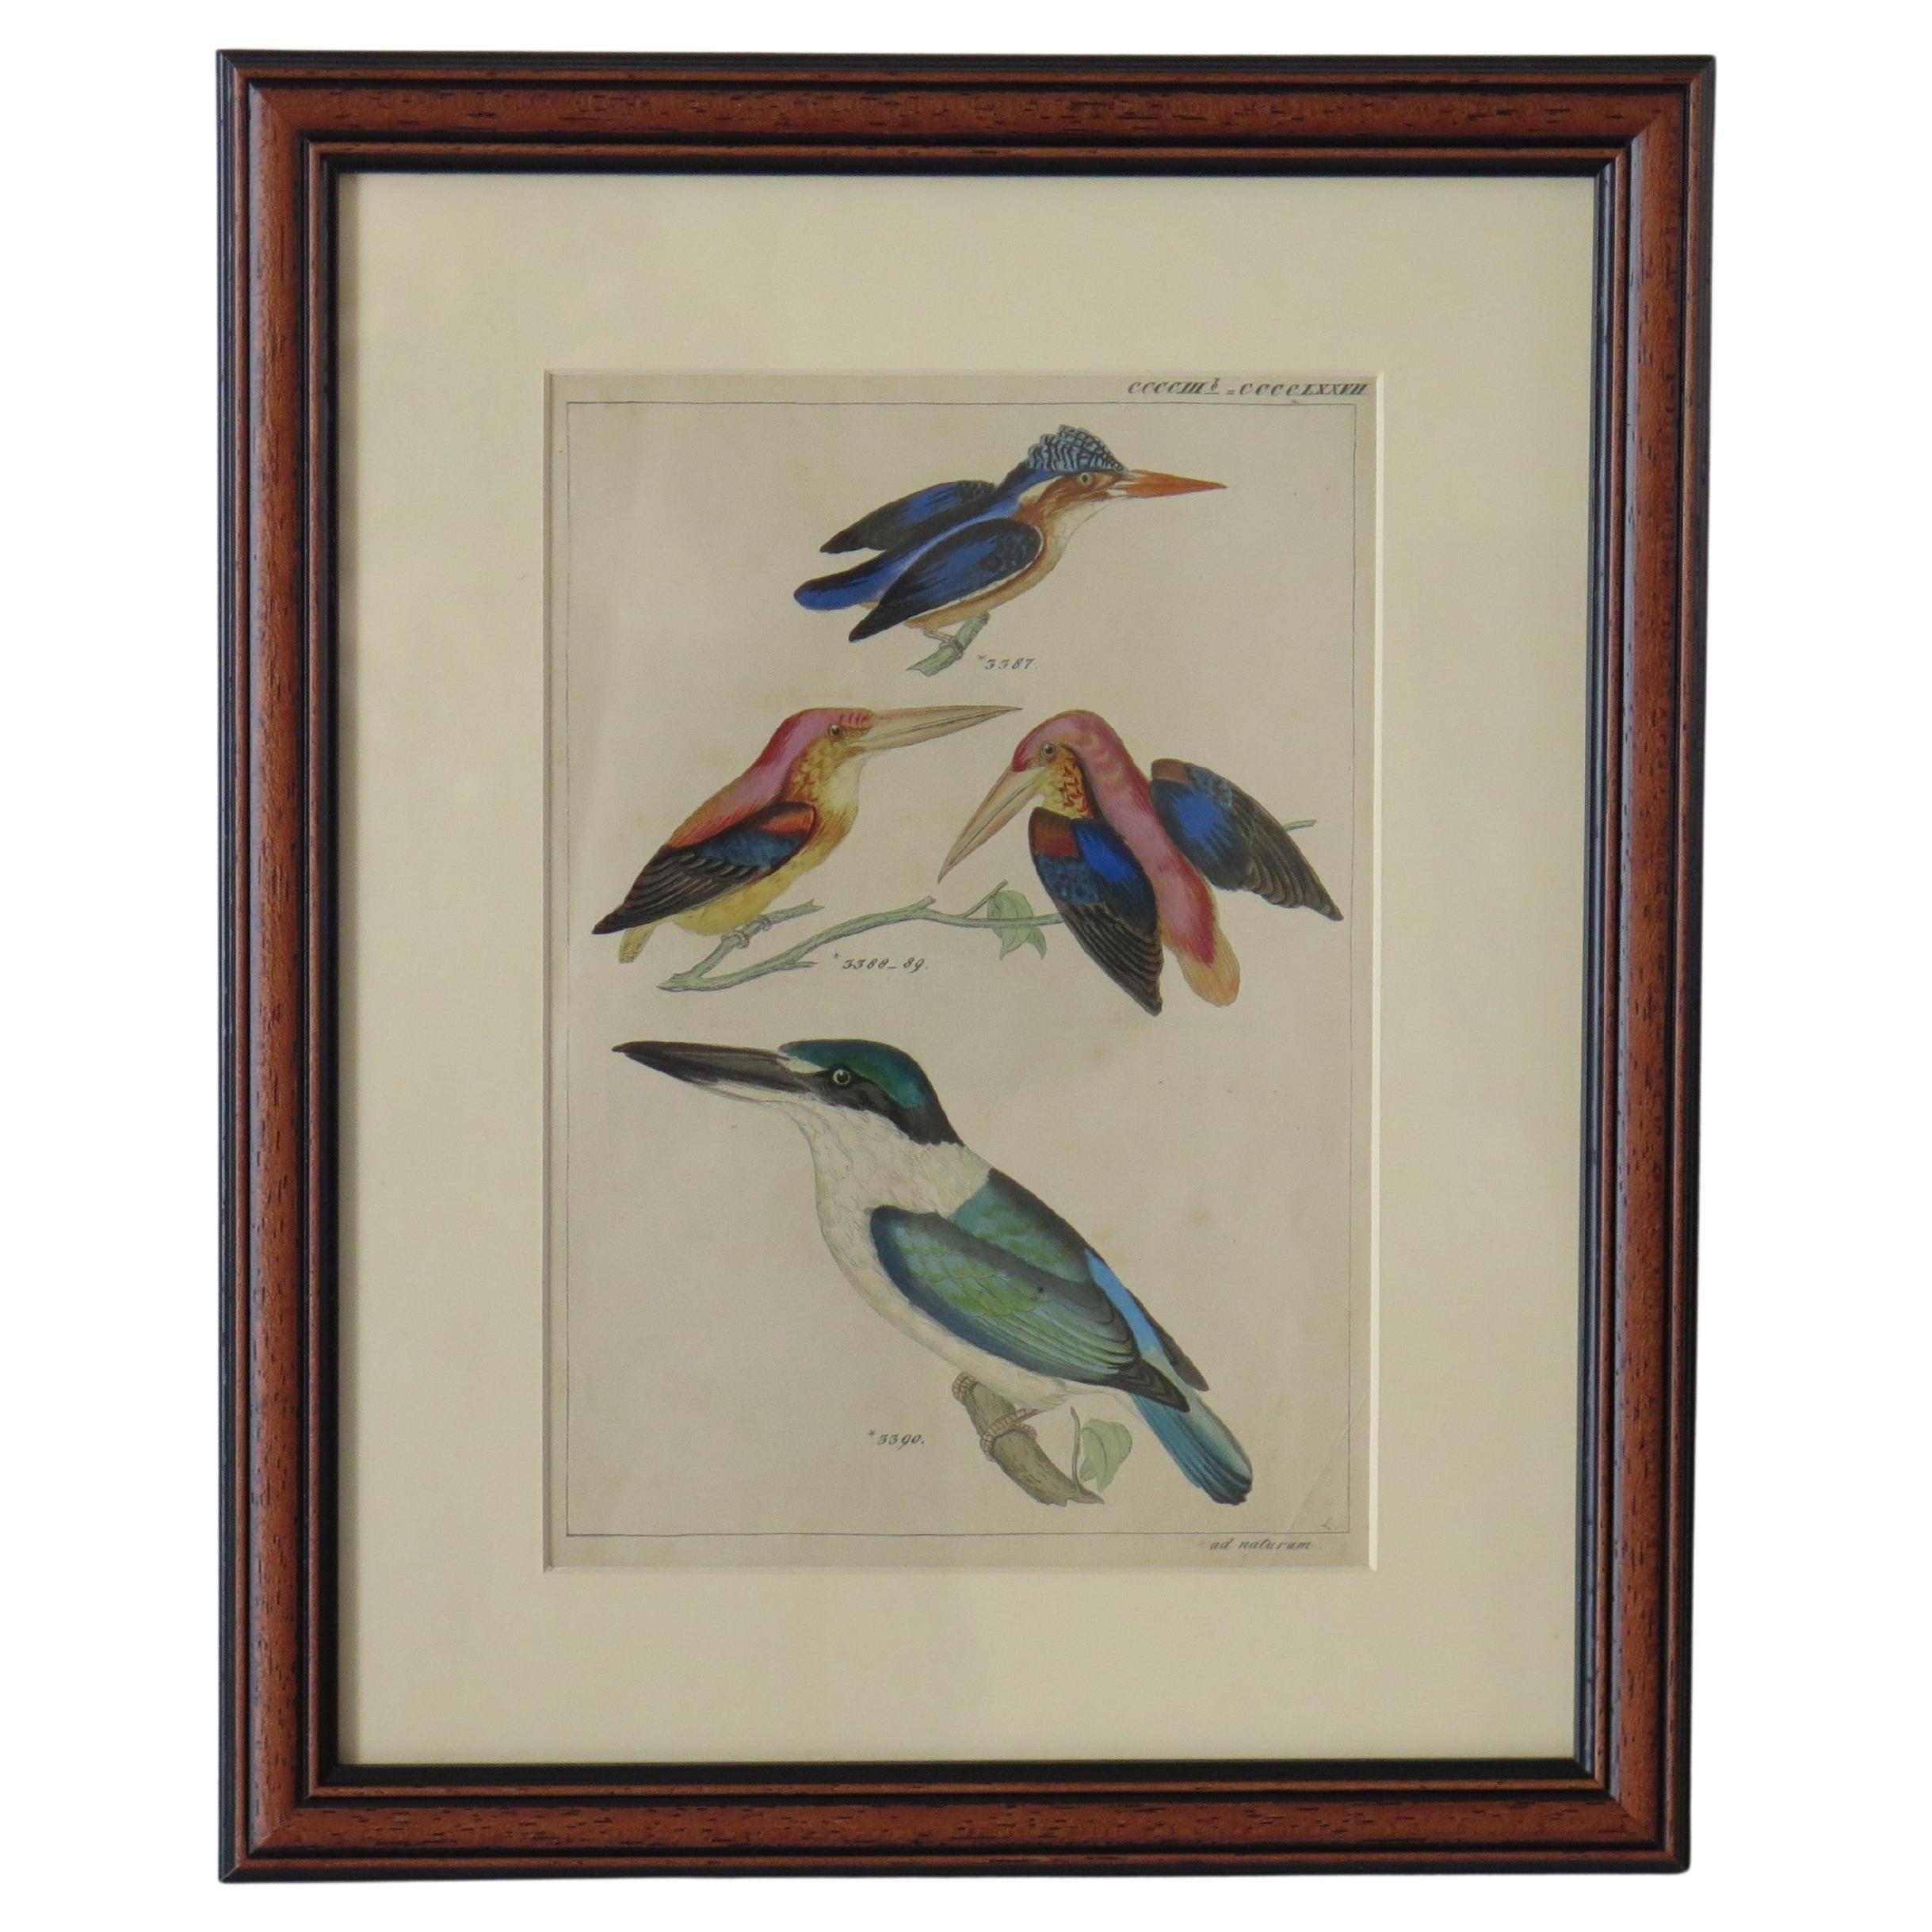 Handkolorierte, gerahmte Gravur von Kingfishers im Audubon-Stil, Mitte des 19. Jahrhunderts